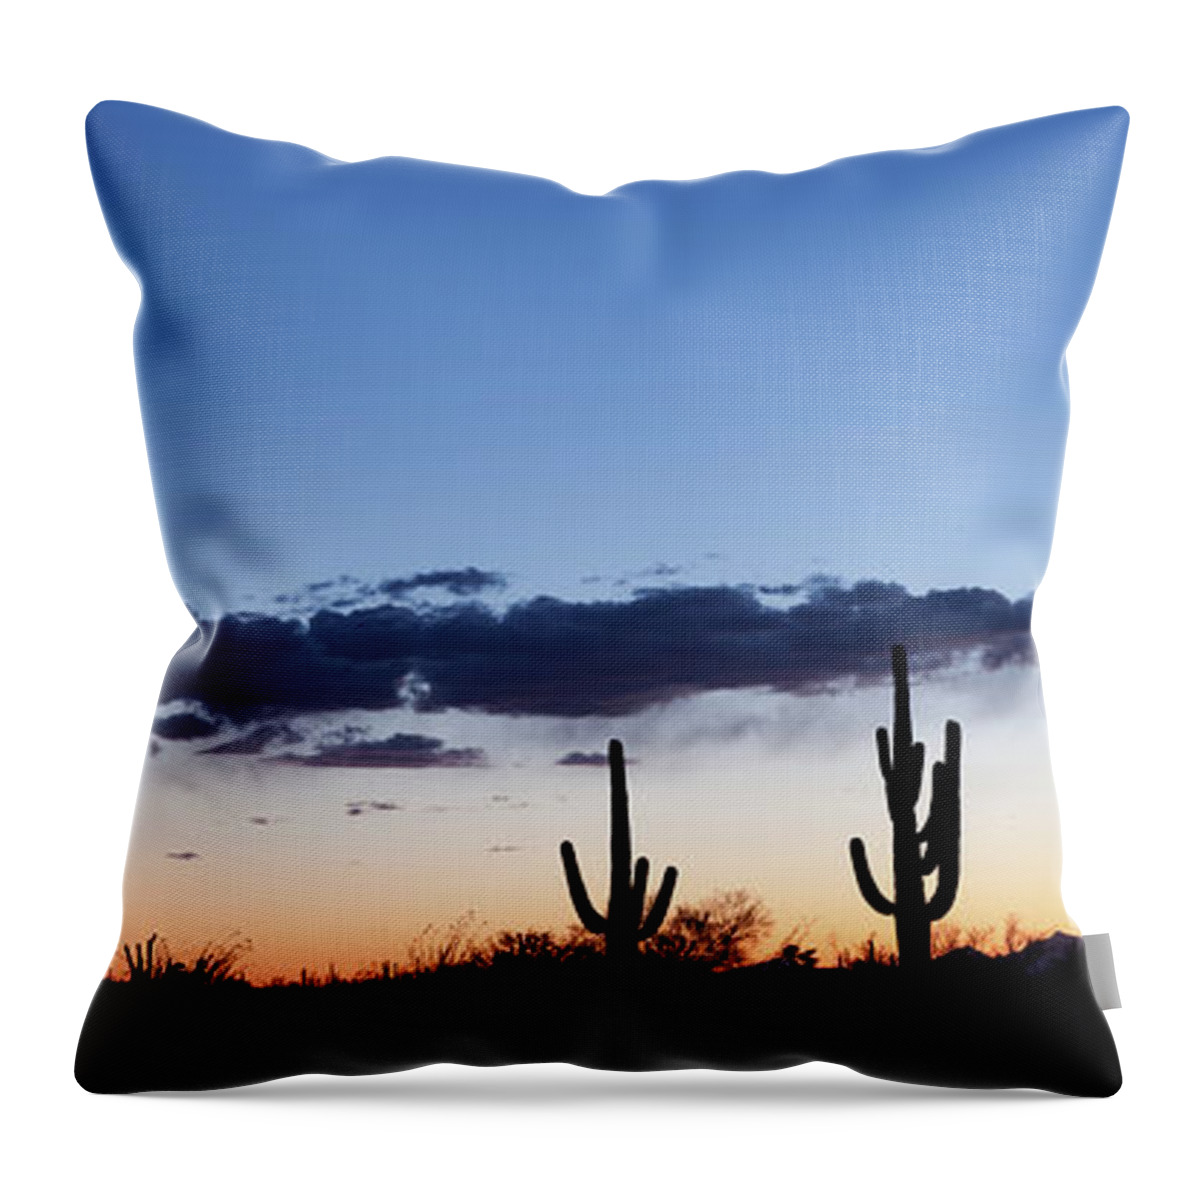 Saguaro Cactus Throw Pillow featuring the photograph Desert Sunset Panorama by Kencanning